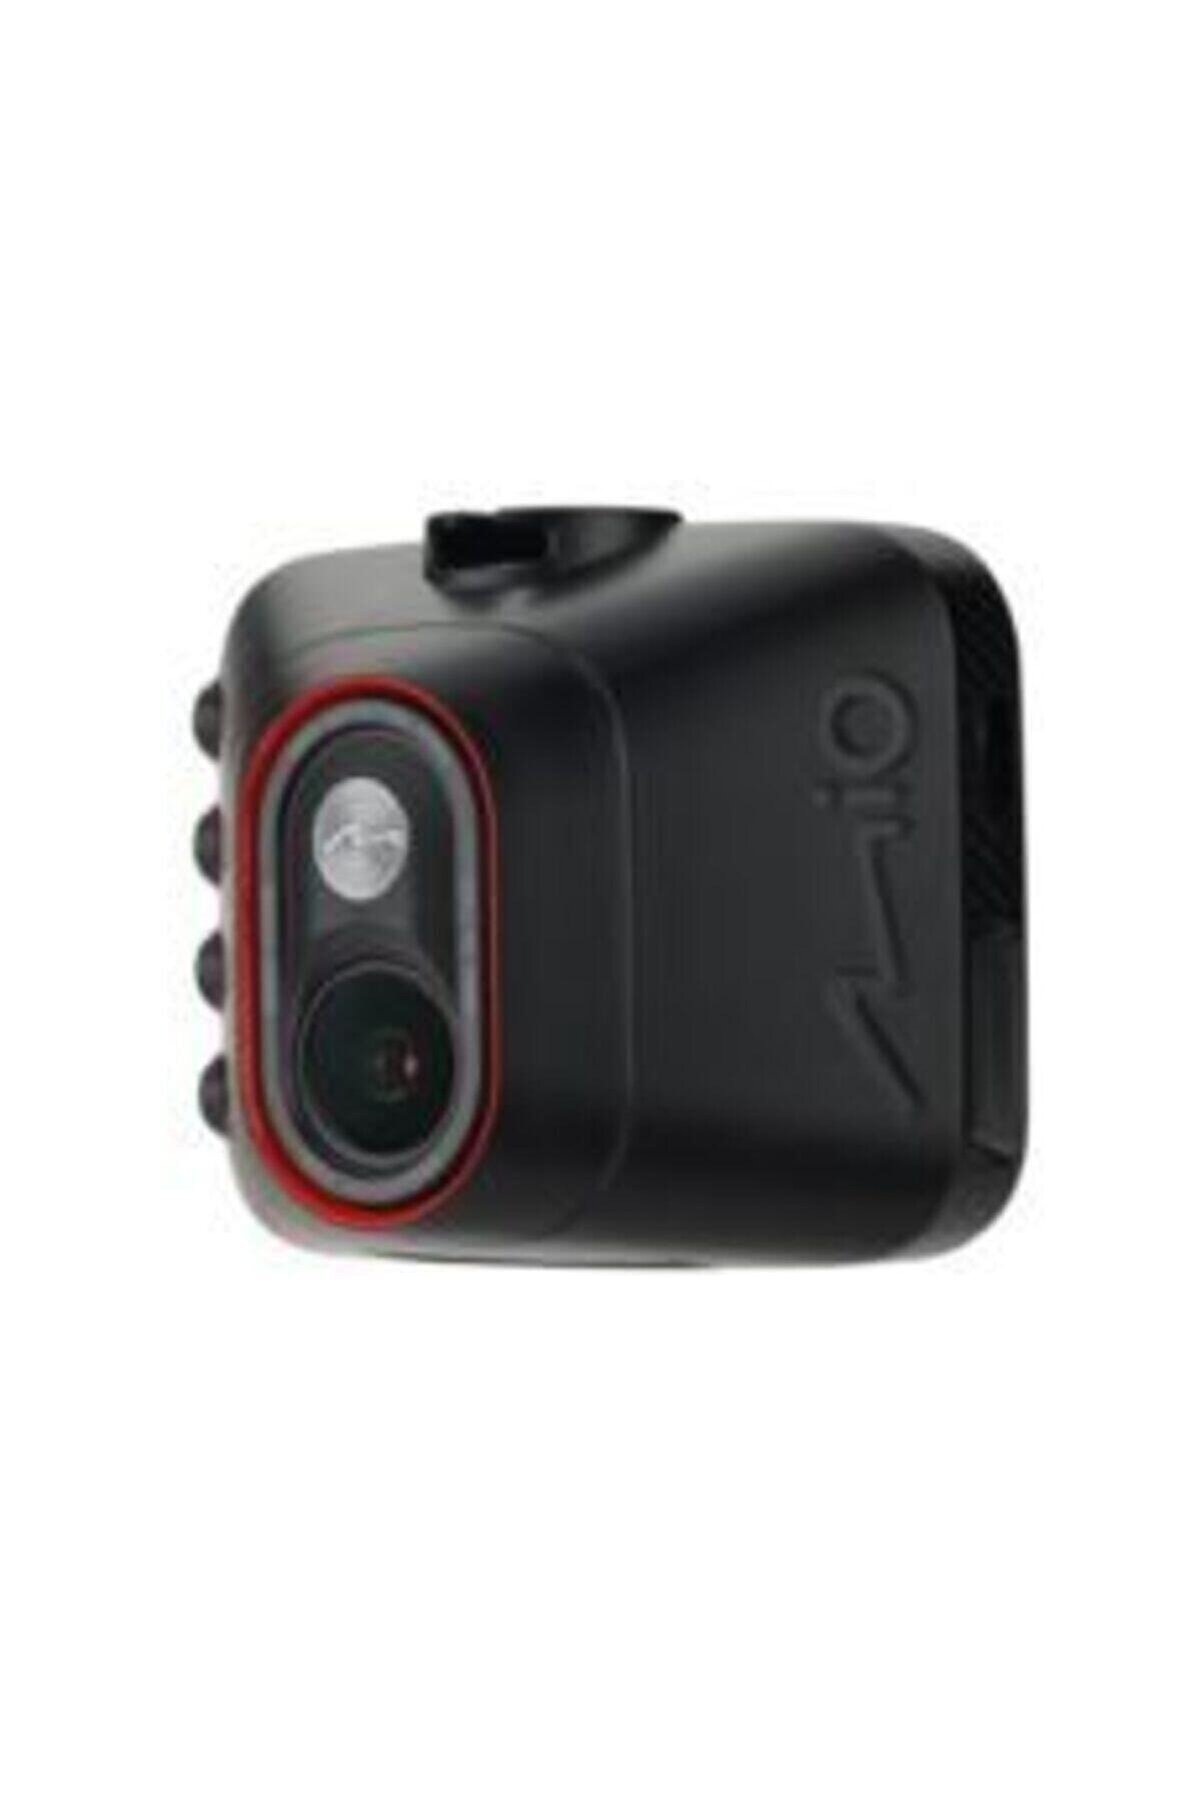 Mio Mıvue C312 2.0'' Fhd Araç Kamerası